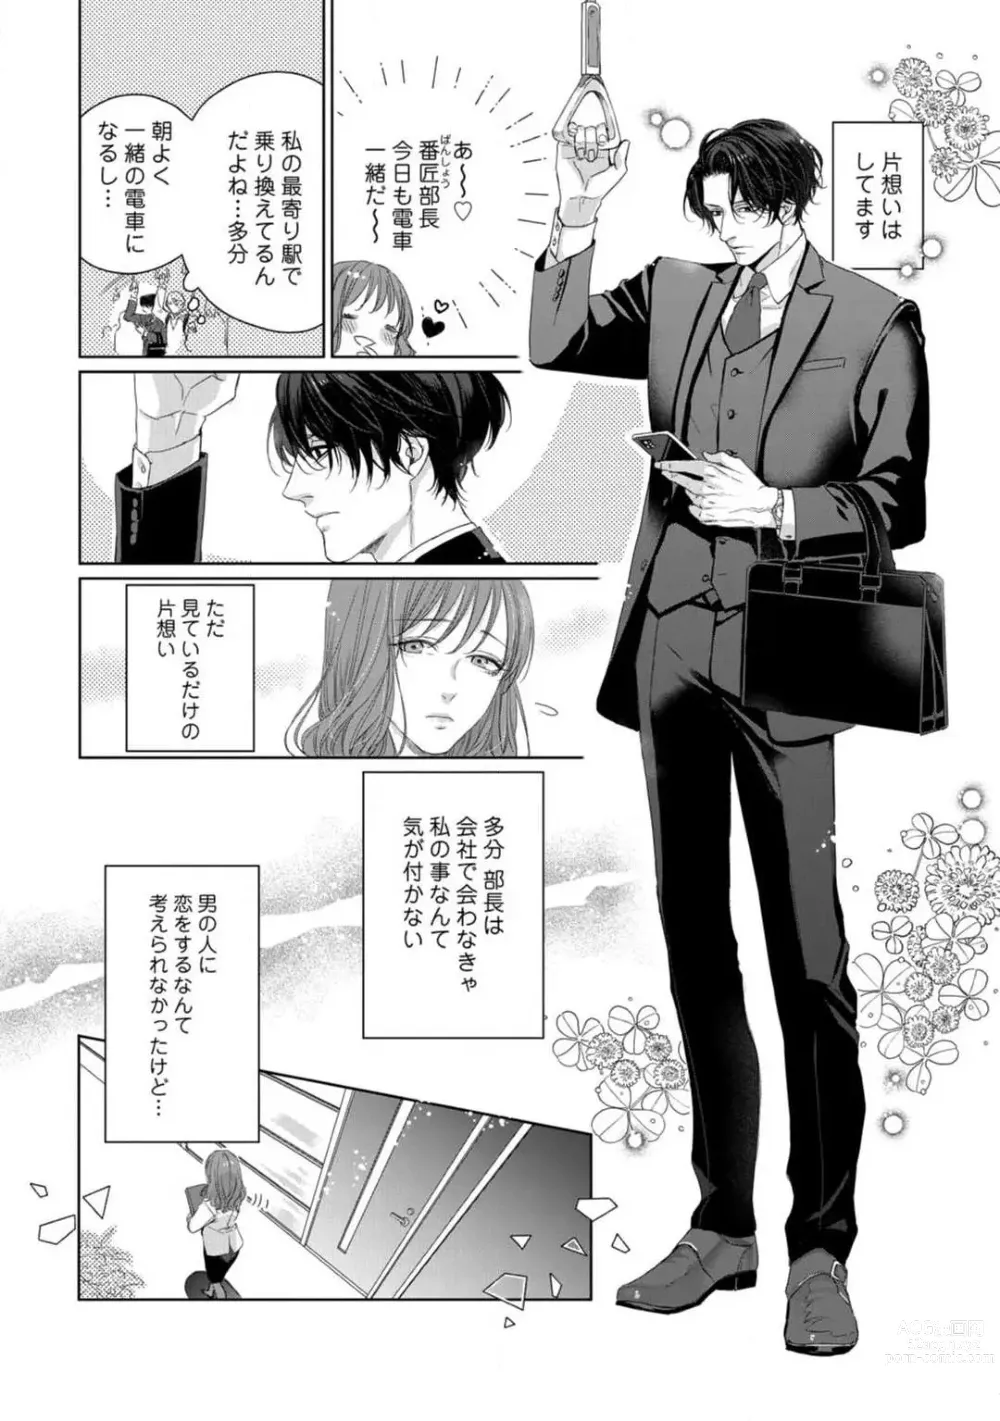 Page 7 of manga Anata no Koisuru Kiraina Watashi~Chp.1-4